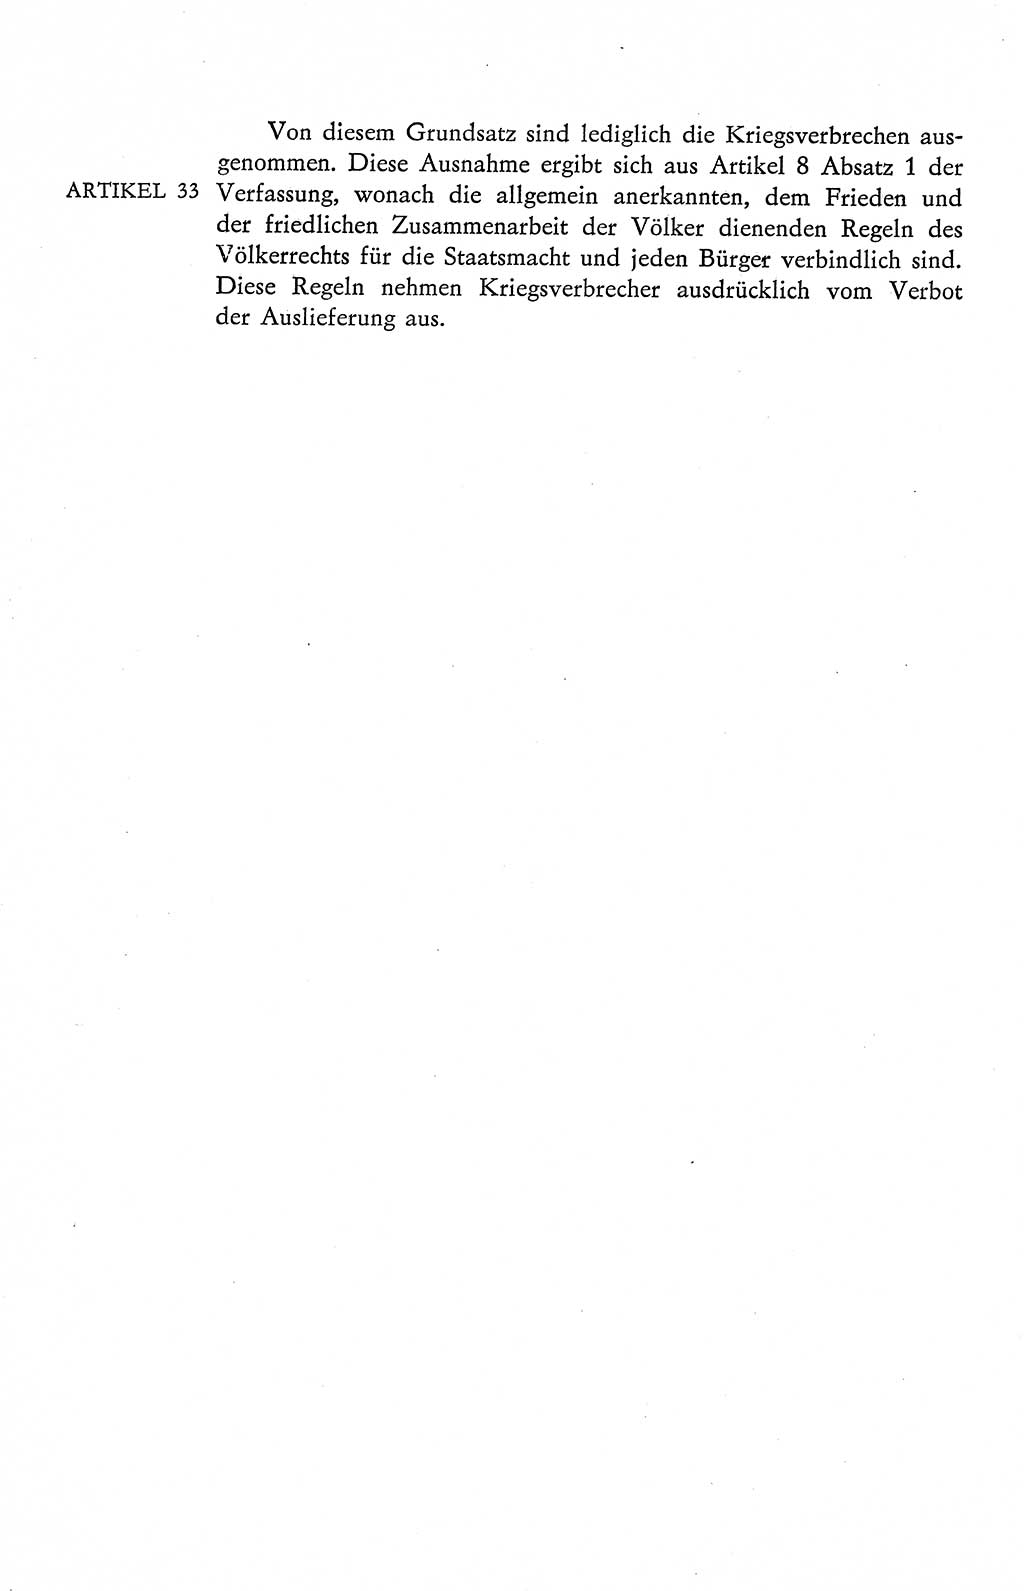 Verfassung der Deutschen Demokratischen Republik (DDR), Dokumente, Kommentar 1969, Band 2, Seite 134 (Verf. DDR Dok. Komm. 1969, Bd. 2, S. 134)